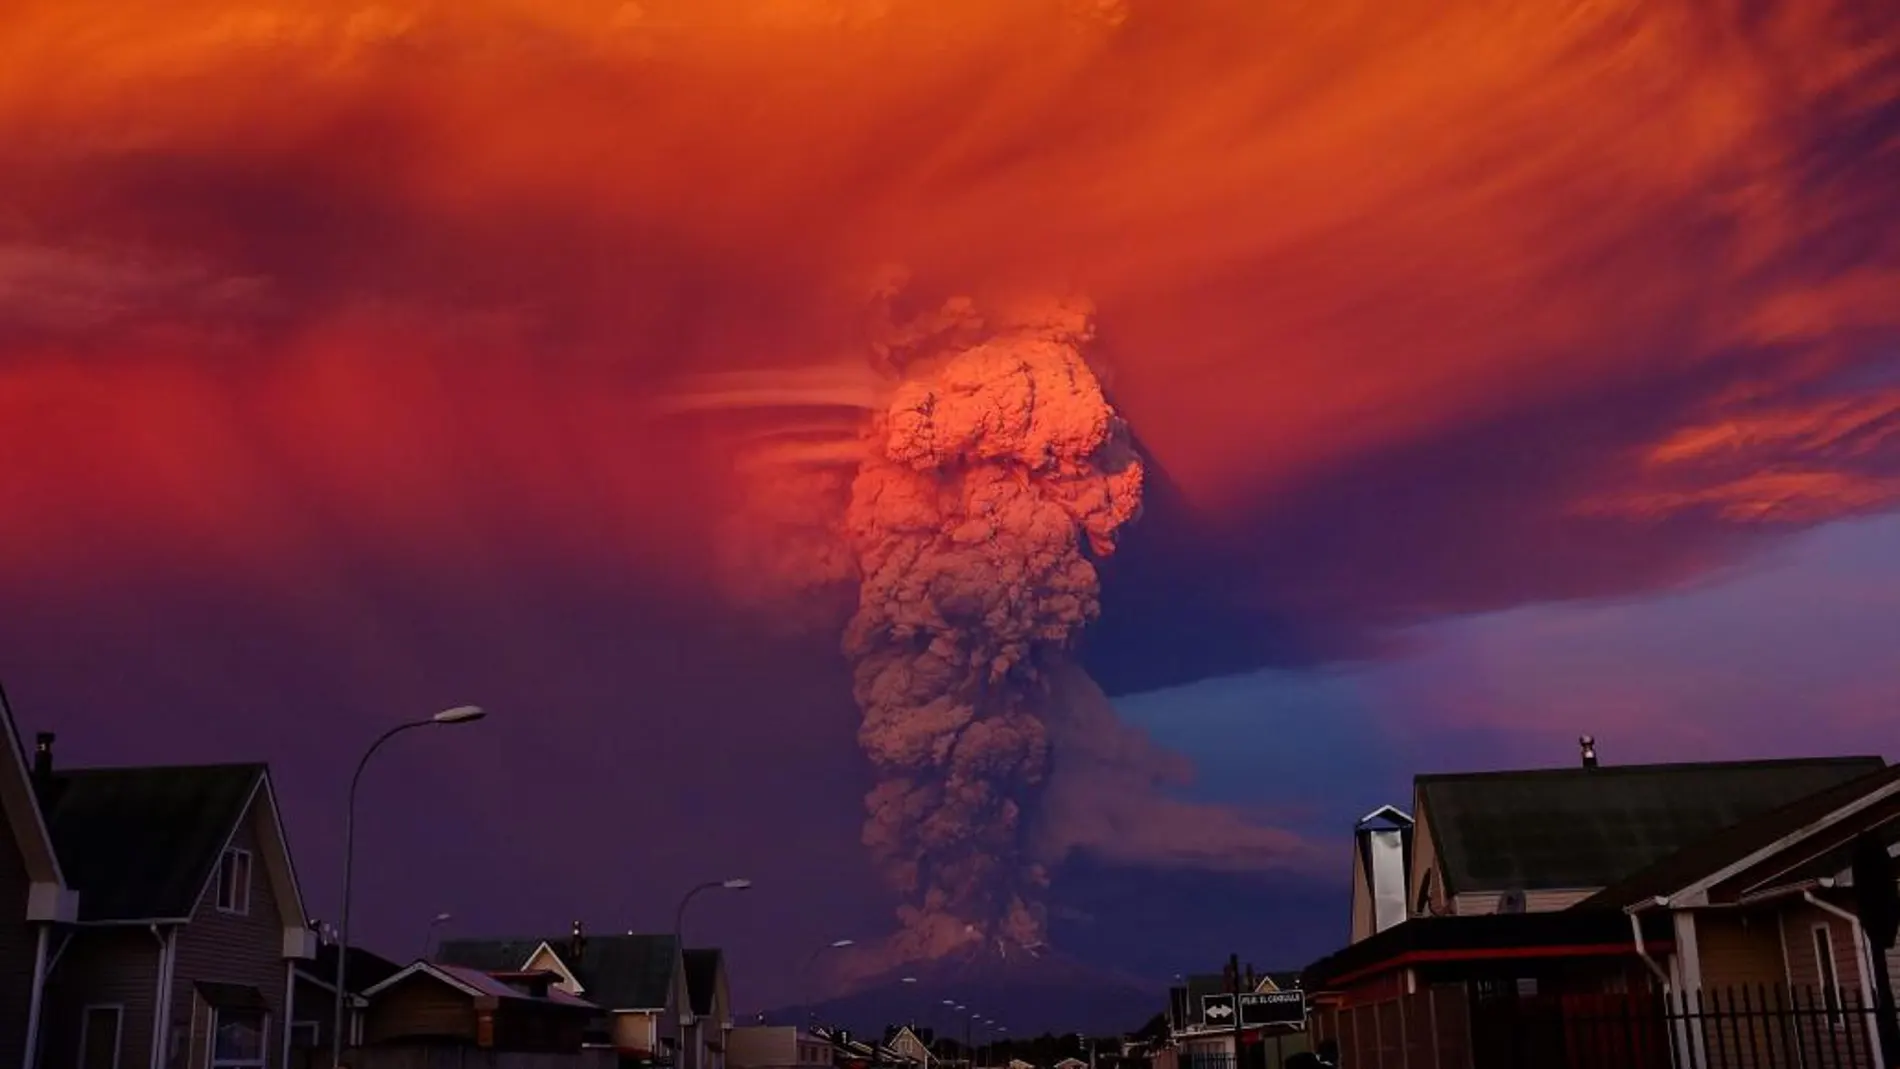 Espectacular vista del volcán activo Calbuco, a 1000 kilómetros de Santiago de Chile (Chile), que entró en erupción en 2015